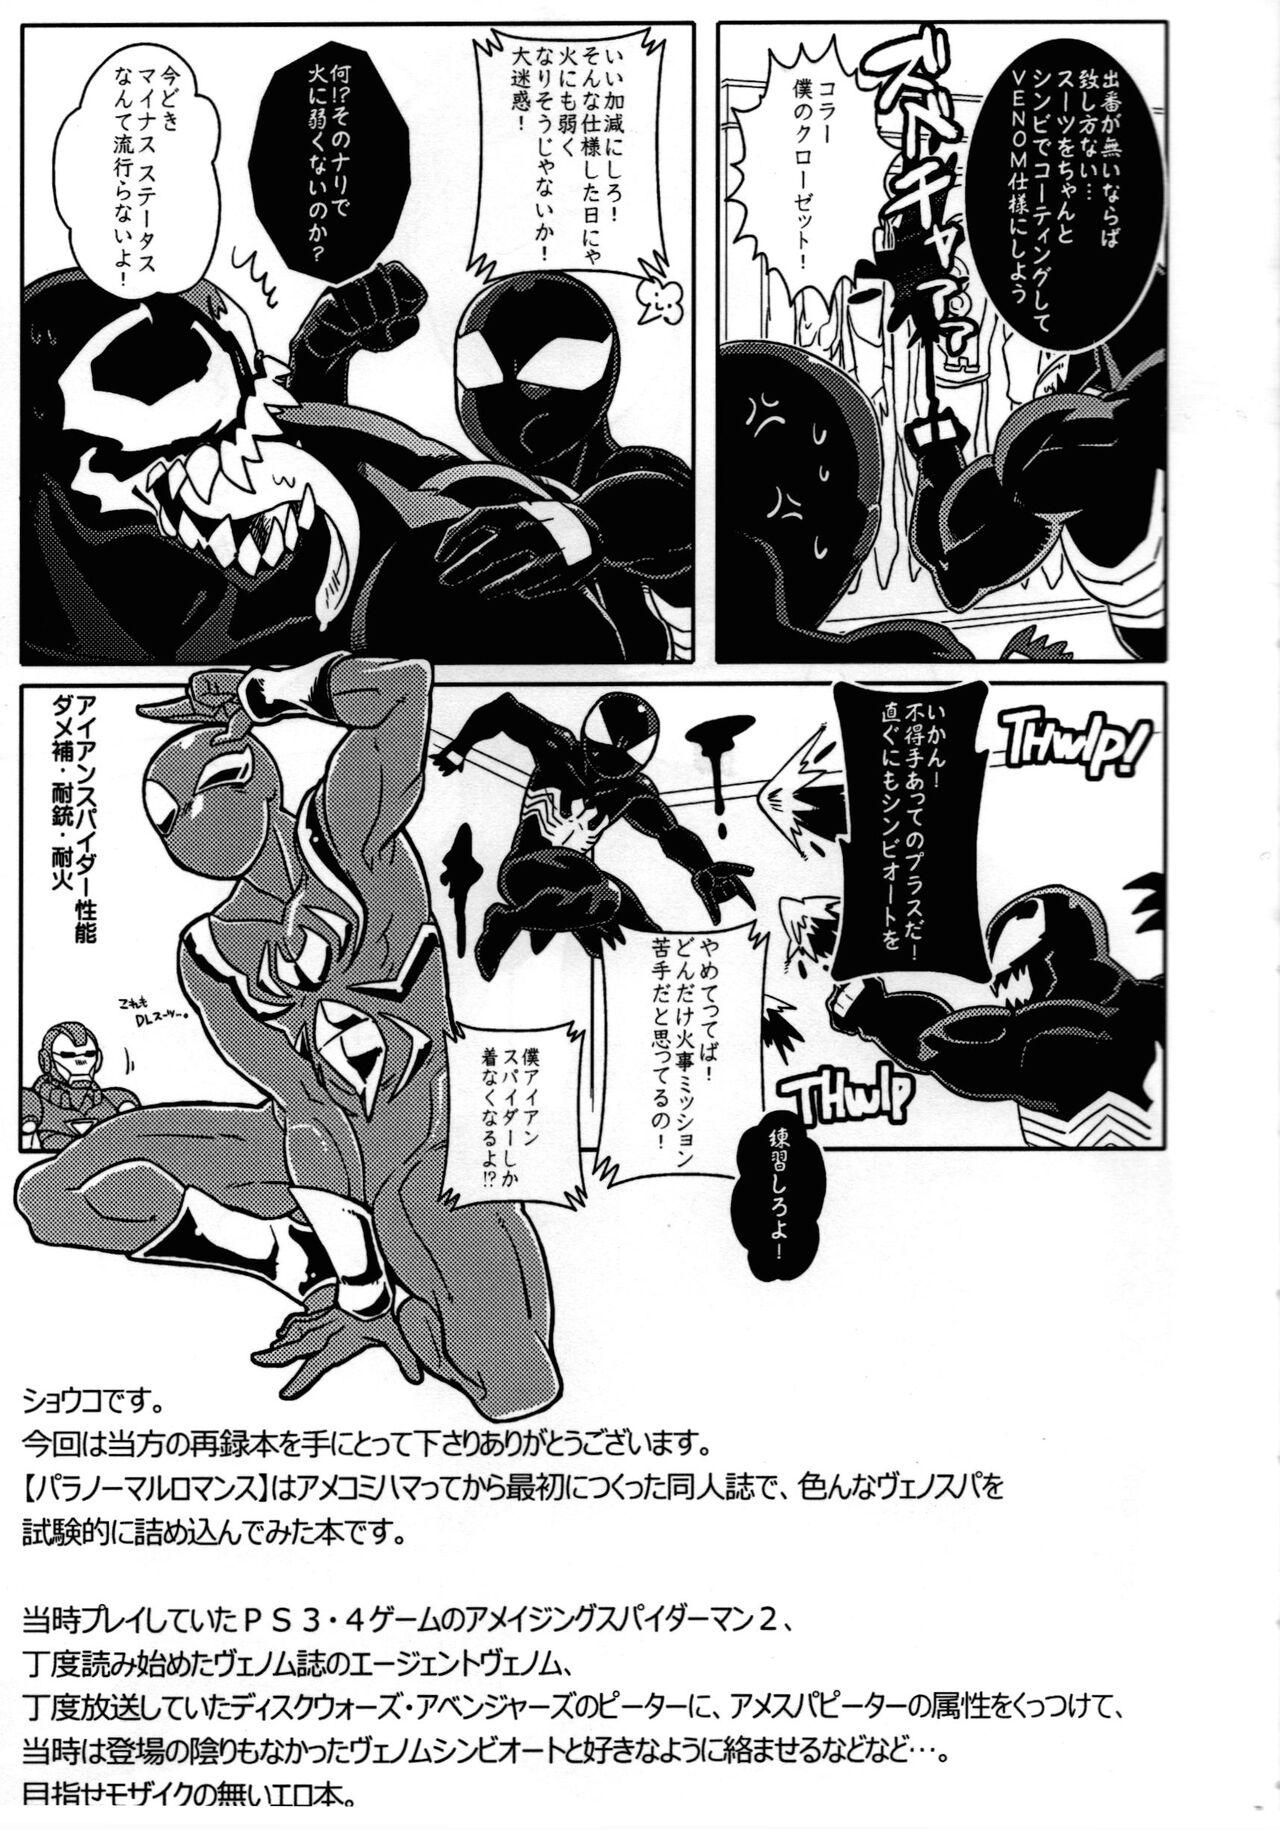 Punished Spider‐Man REMIX - Spider man Toy - Page 7